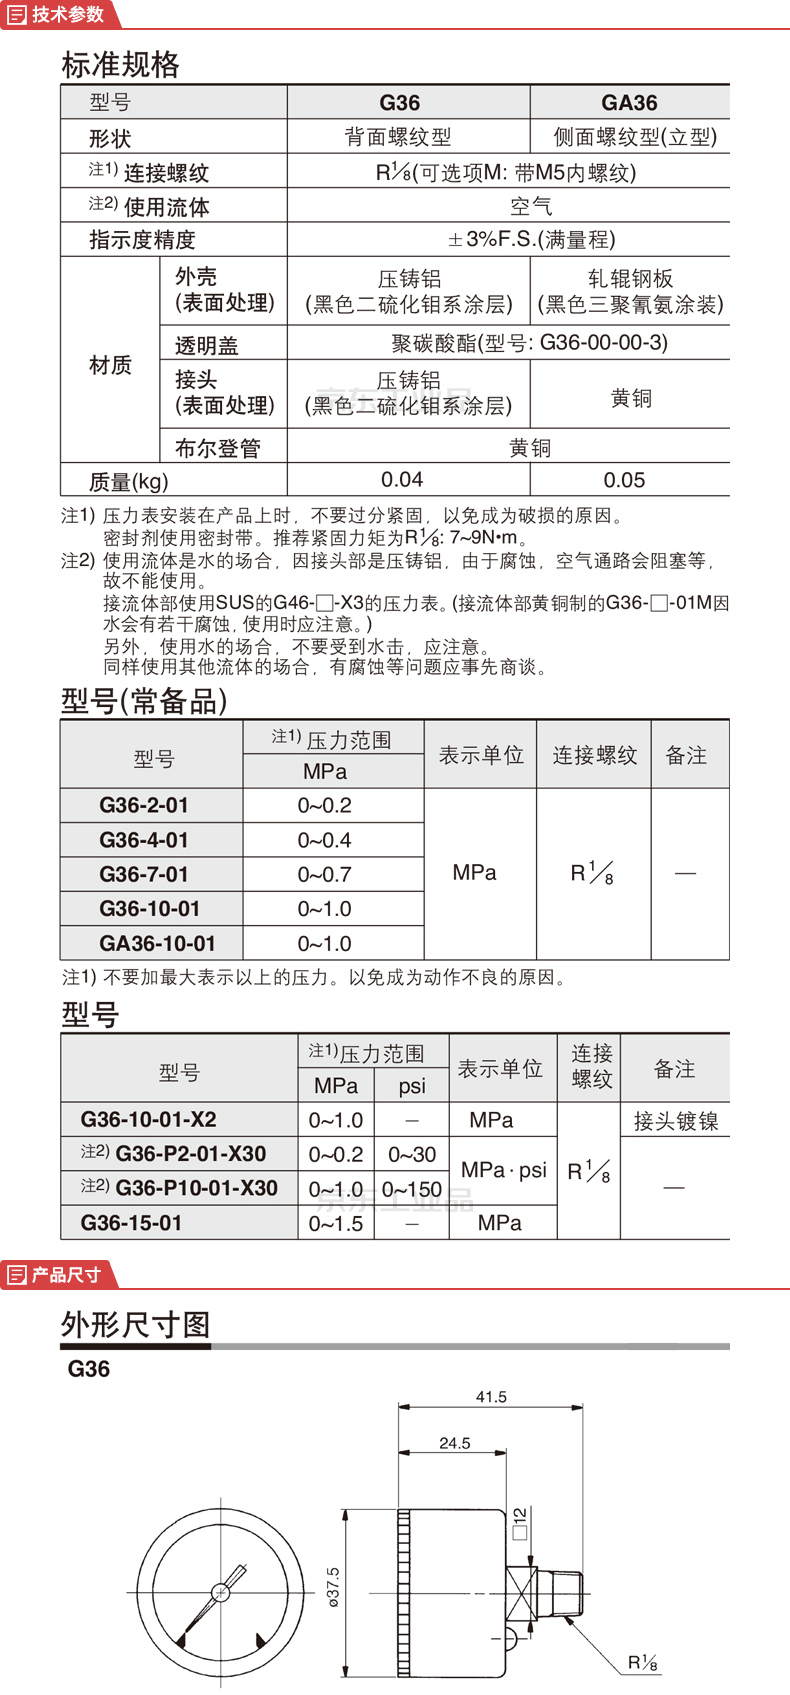 SMC 带限位指示器一般用压力表;G36-2-01